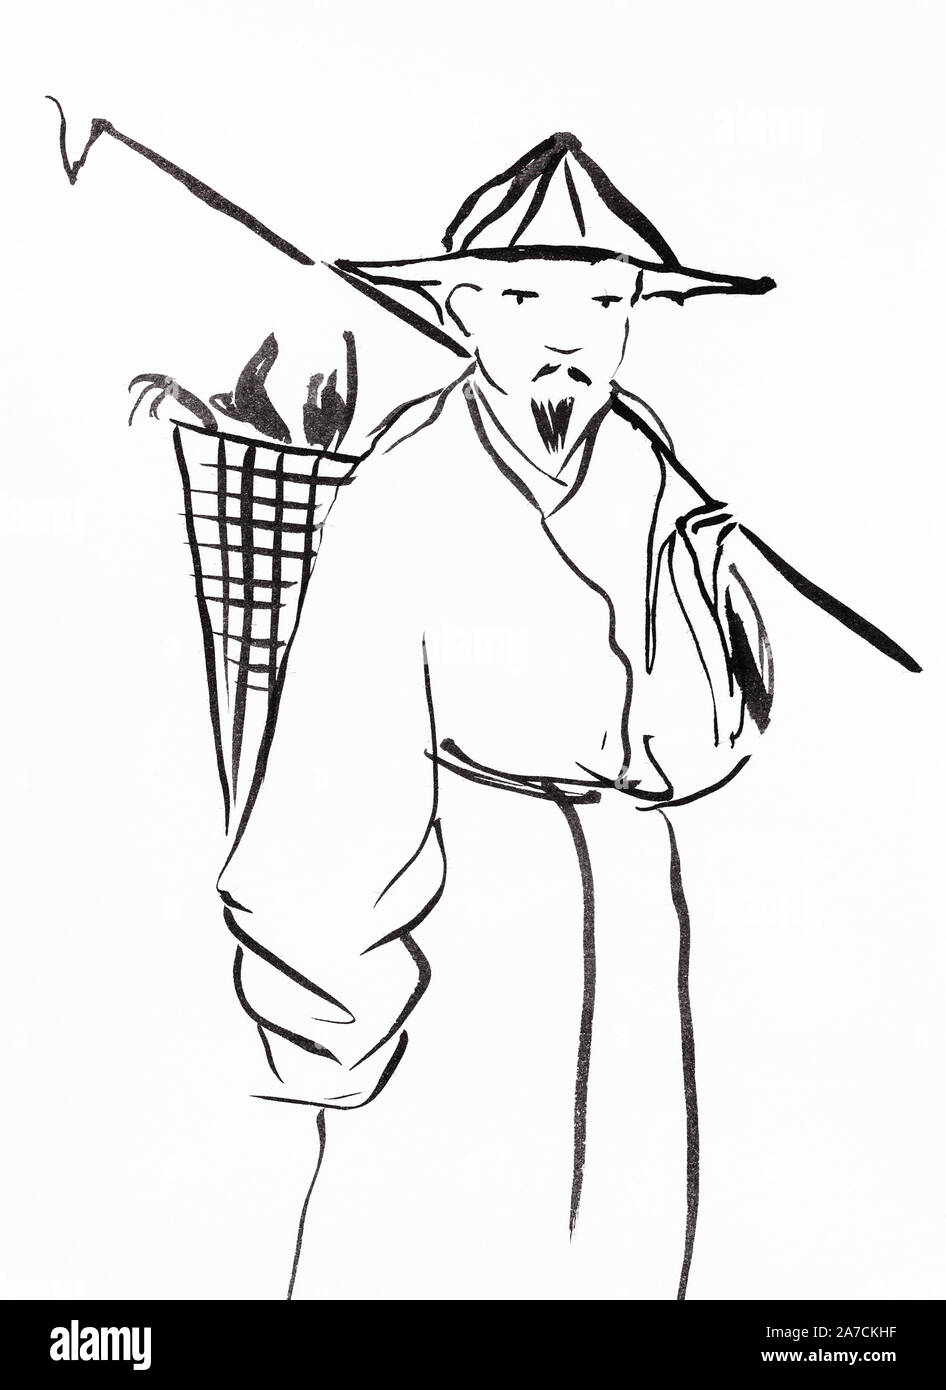 Paysan chinois avec panier sur la main arrière dessiné en style sumi-e par l'encre noire sur du papier blanc Banque D'Images